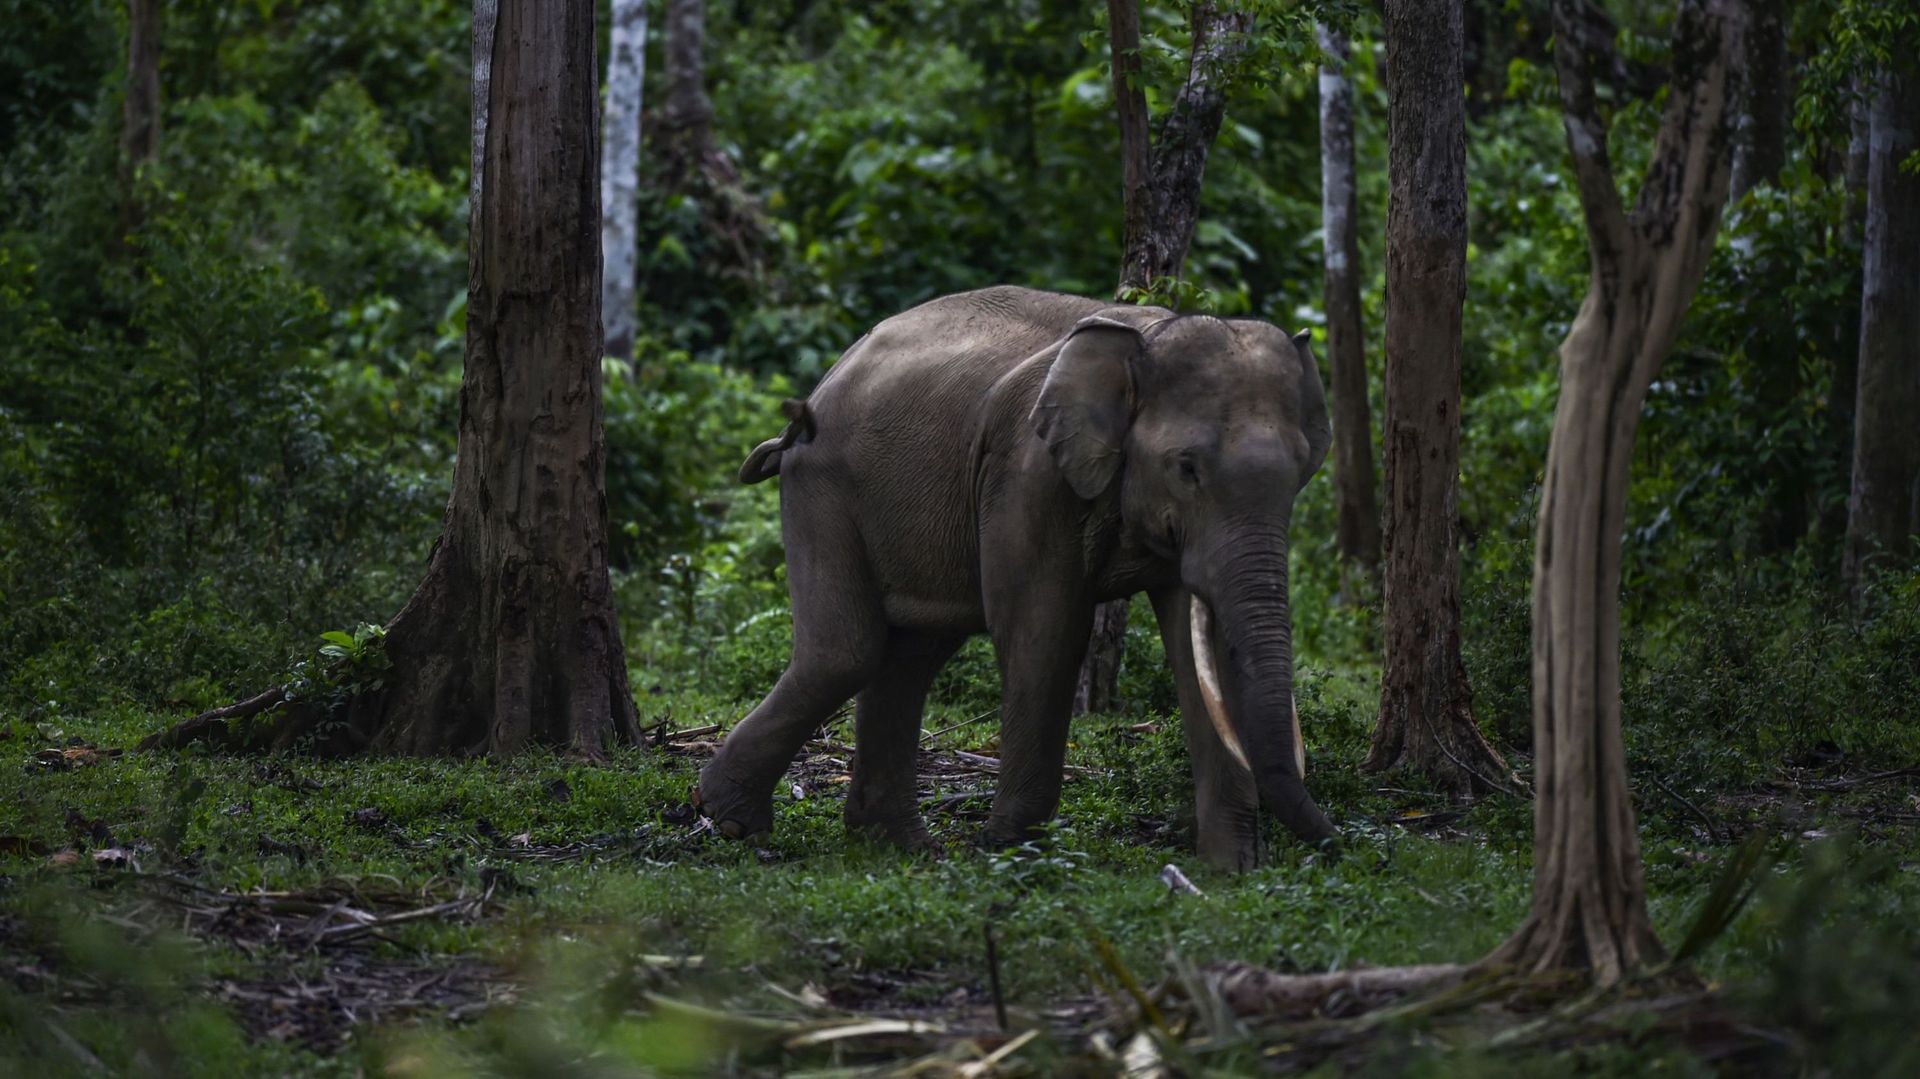 L'éléphant, pilier essentiel de la nature, de plus en plus menacé de disparaître